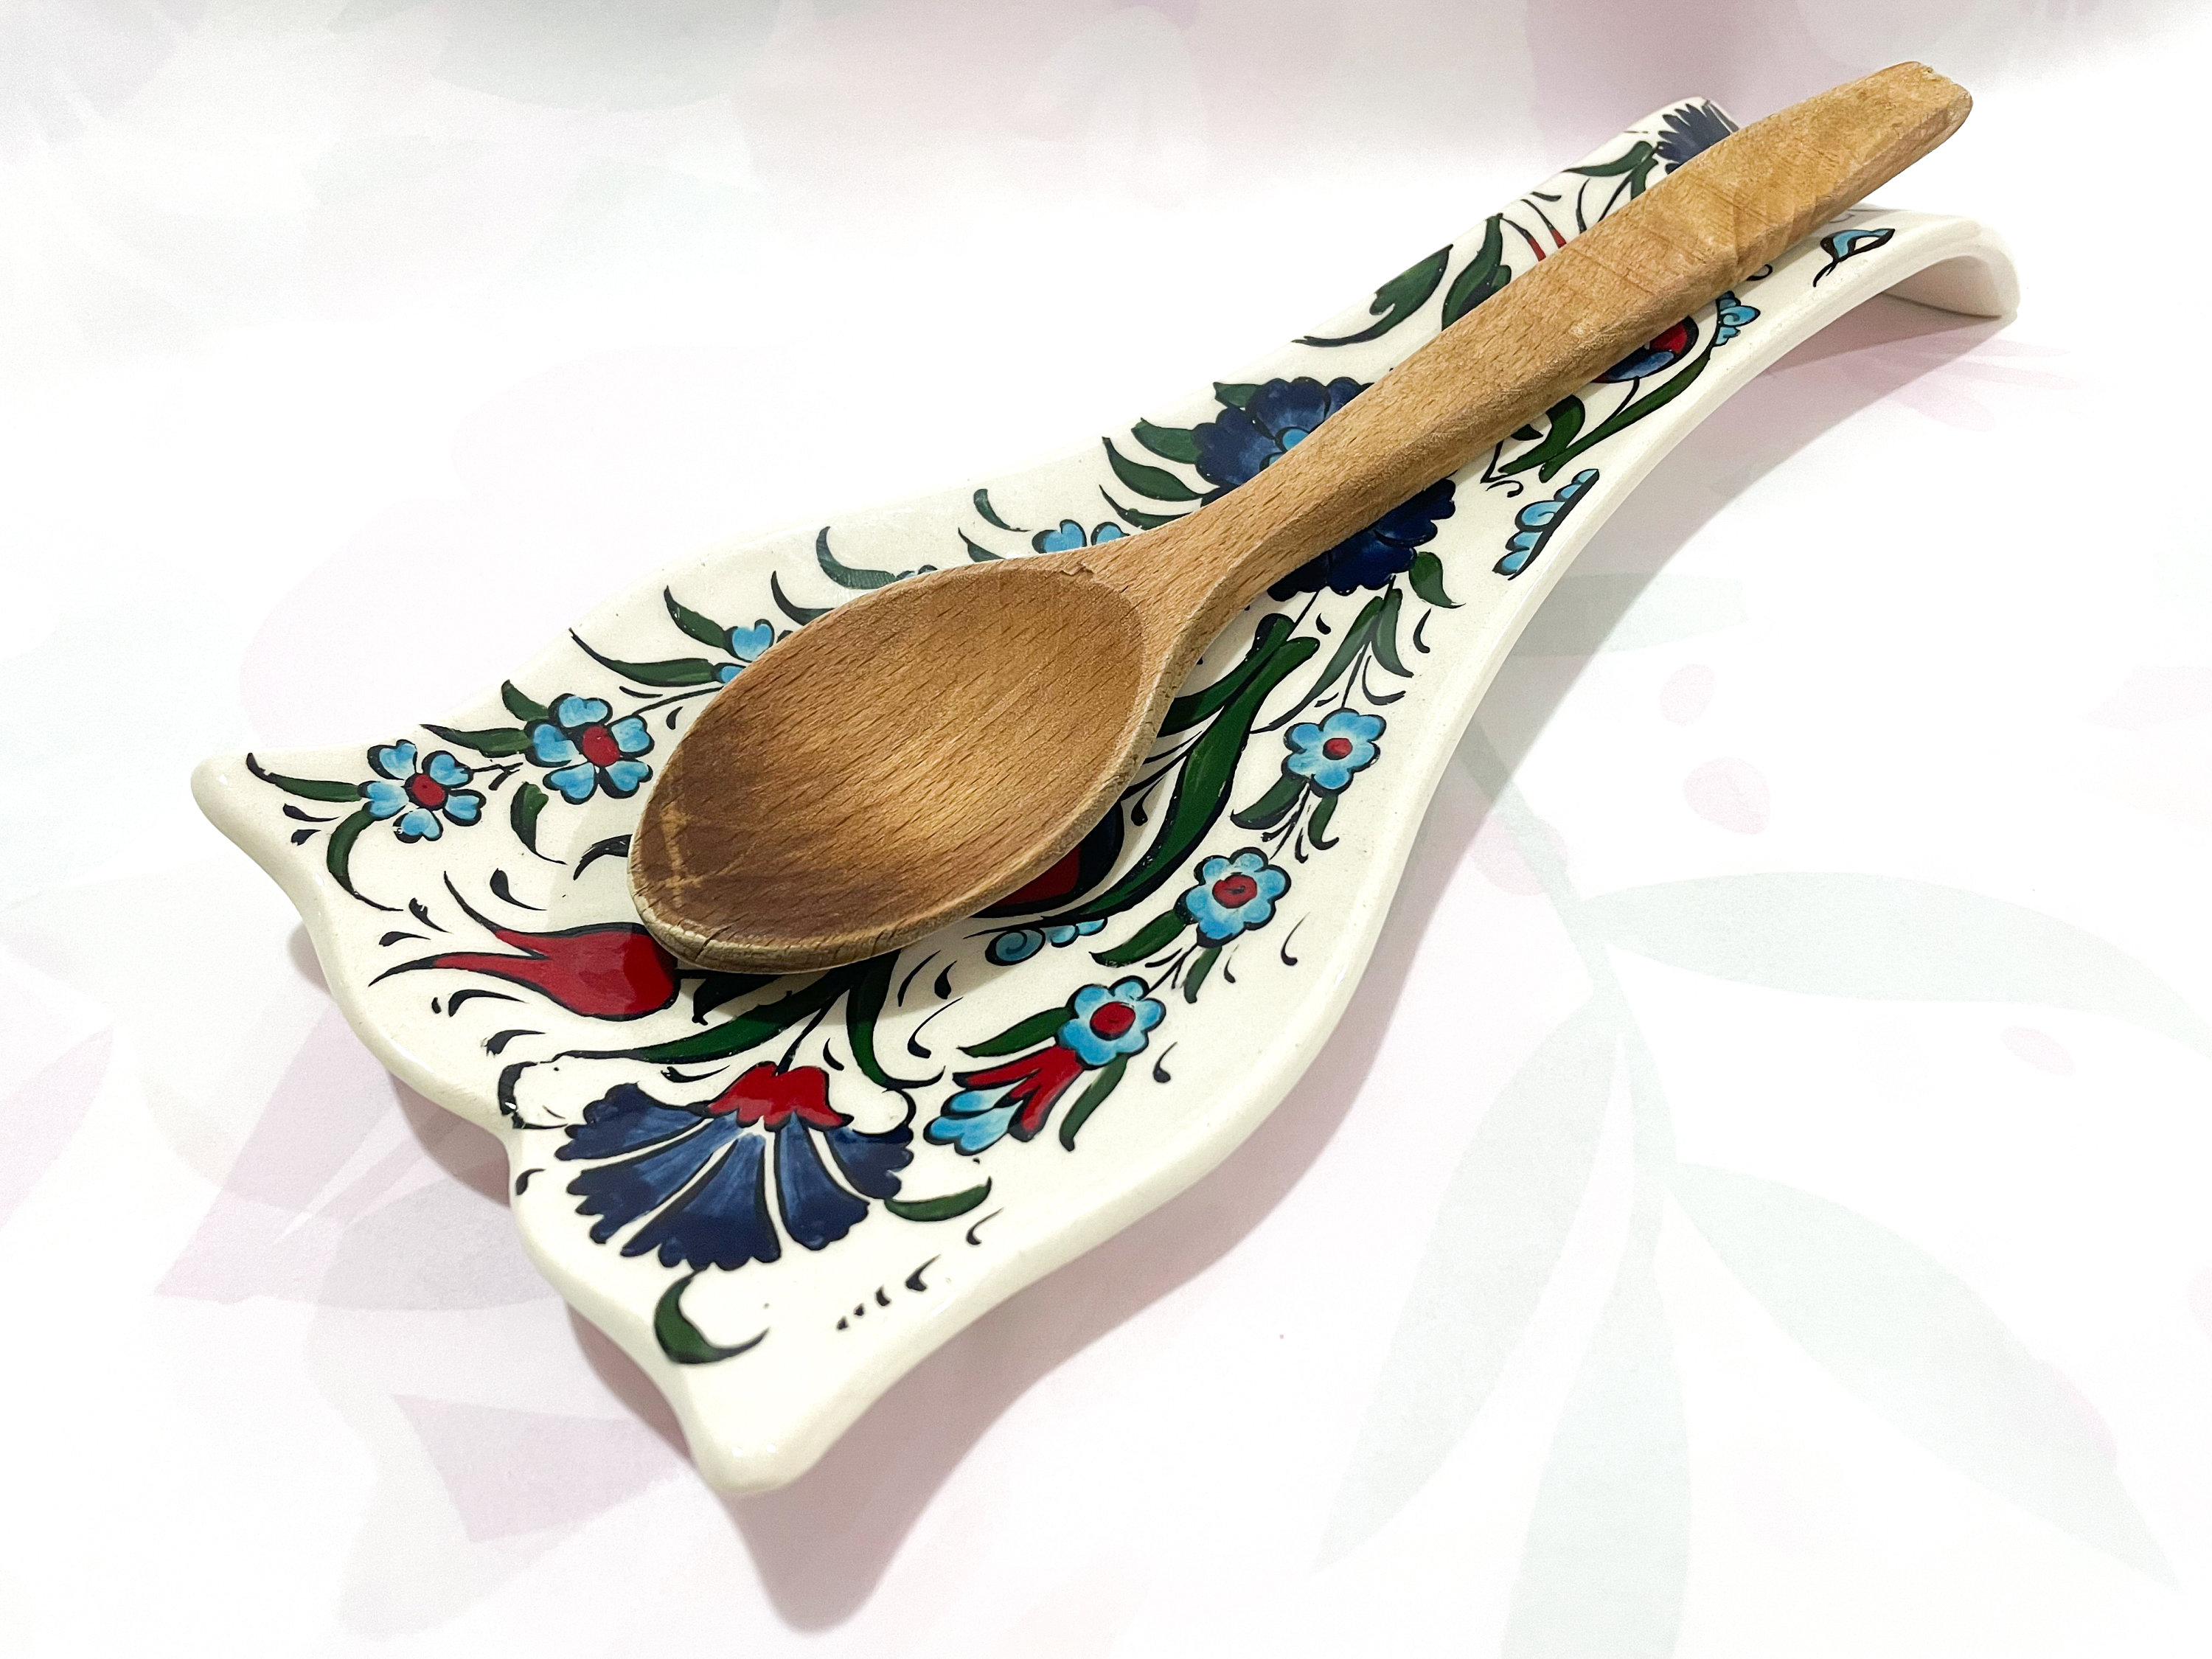 Soporte para cuchara, reposacucharas de cerámica, fácil de limpiar,  utensilios de cocina (Blanco - 23 x 8,8 x 2,3 cm